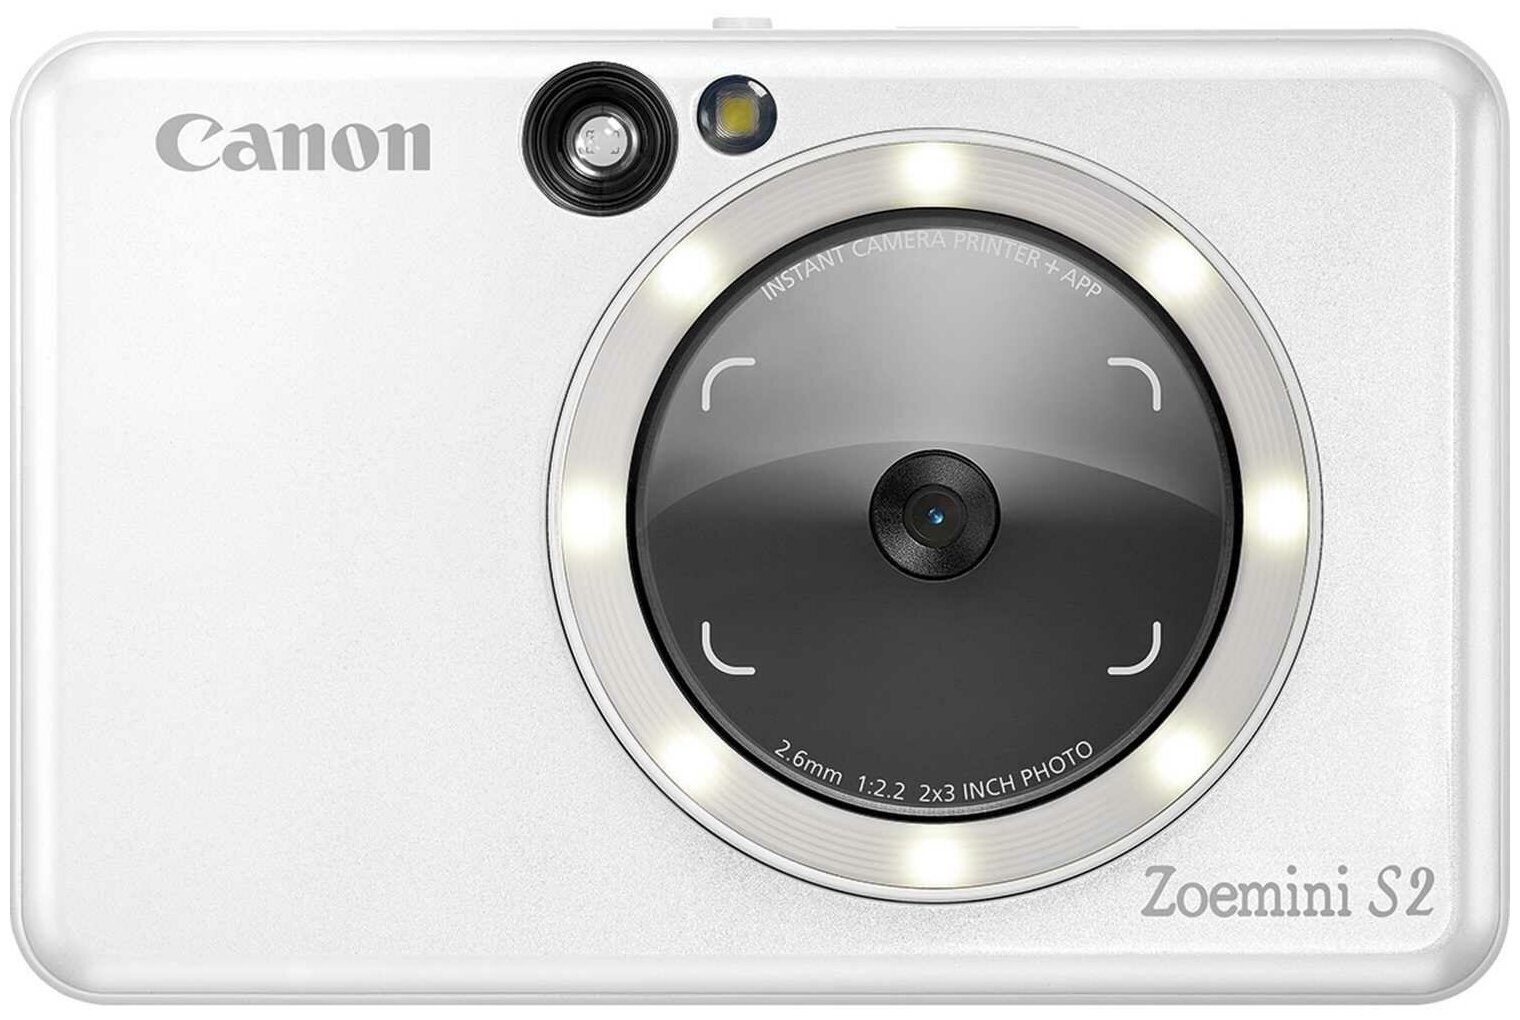   Canon S2 White